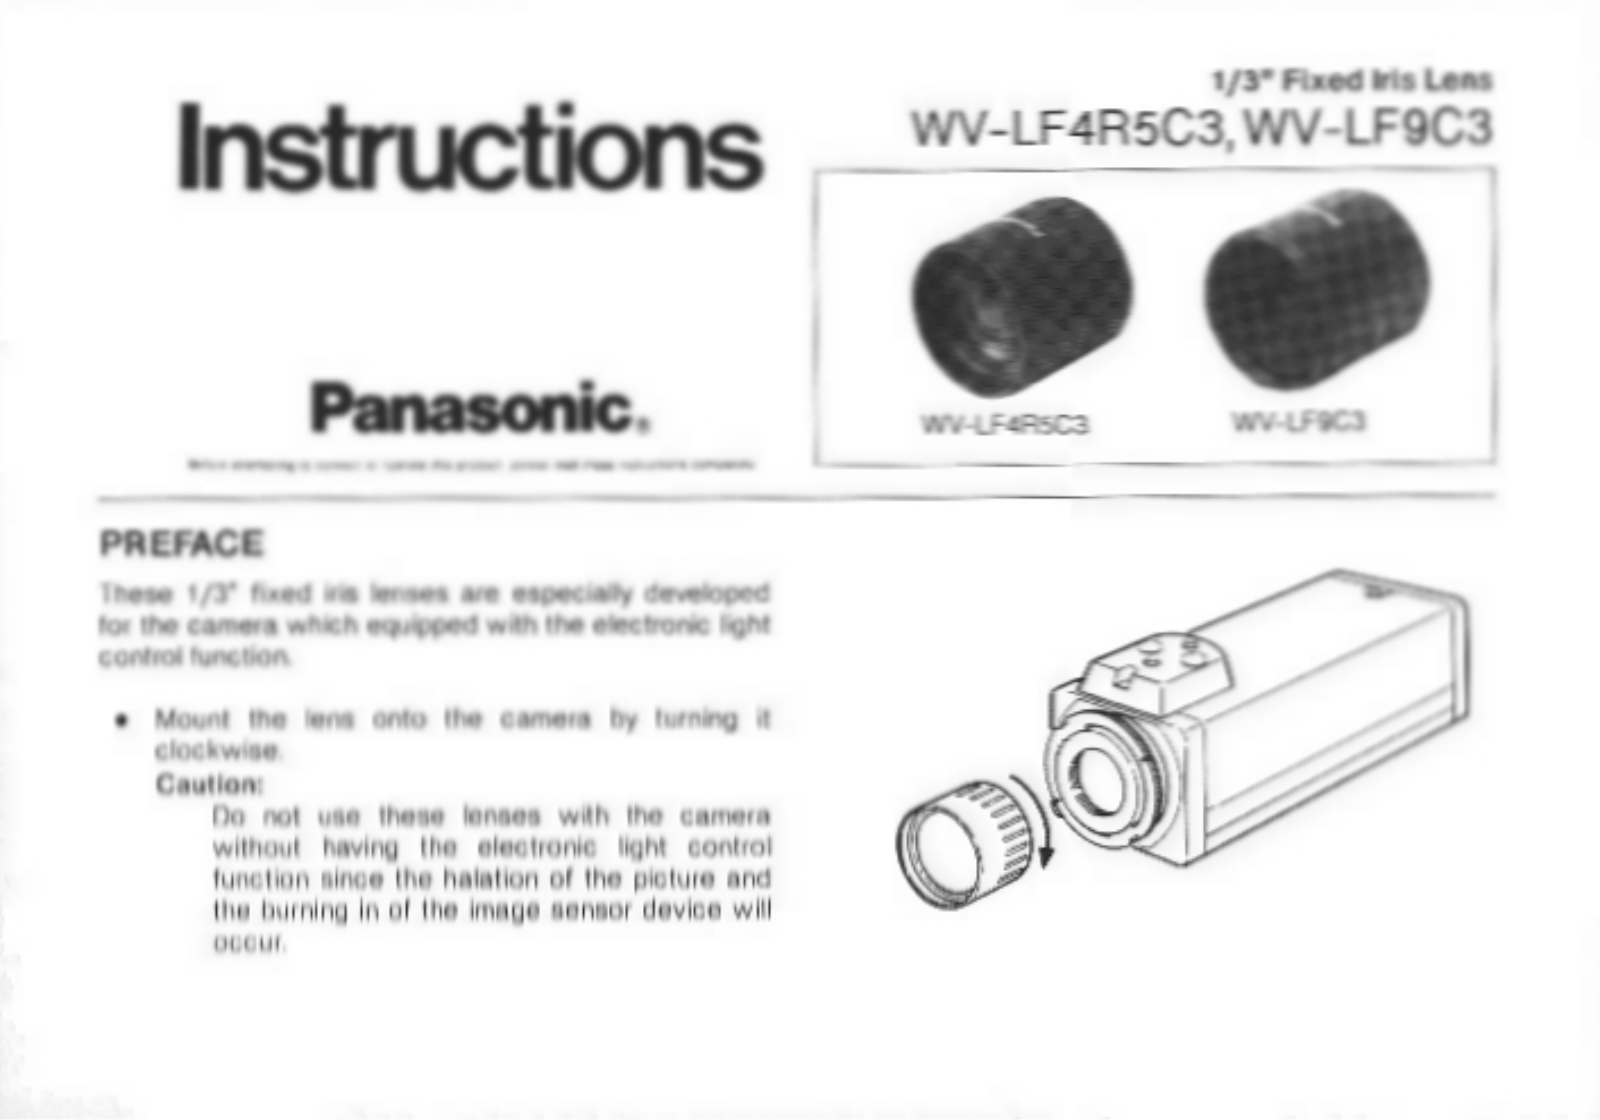 Panasonic WV-LF9C3, WV-LFR5C3 User Manual